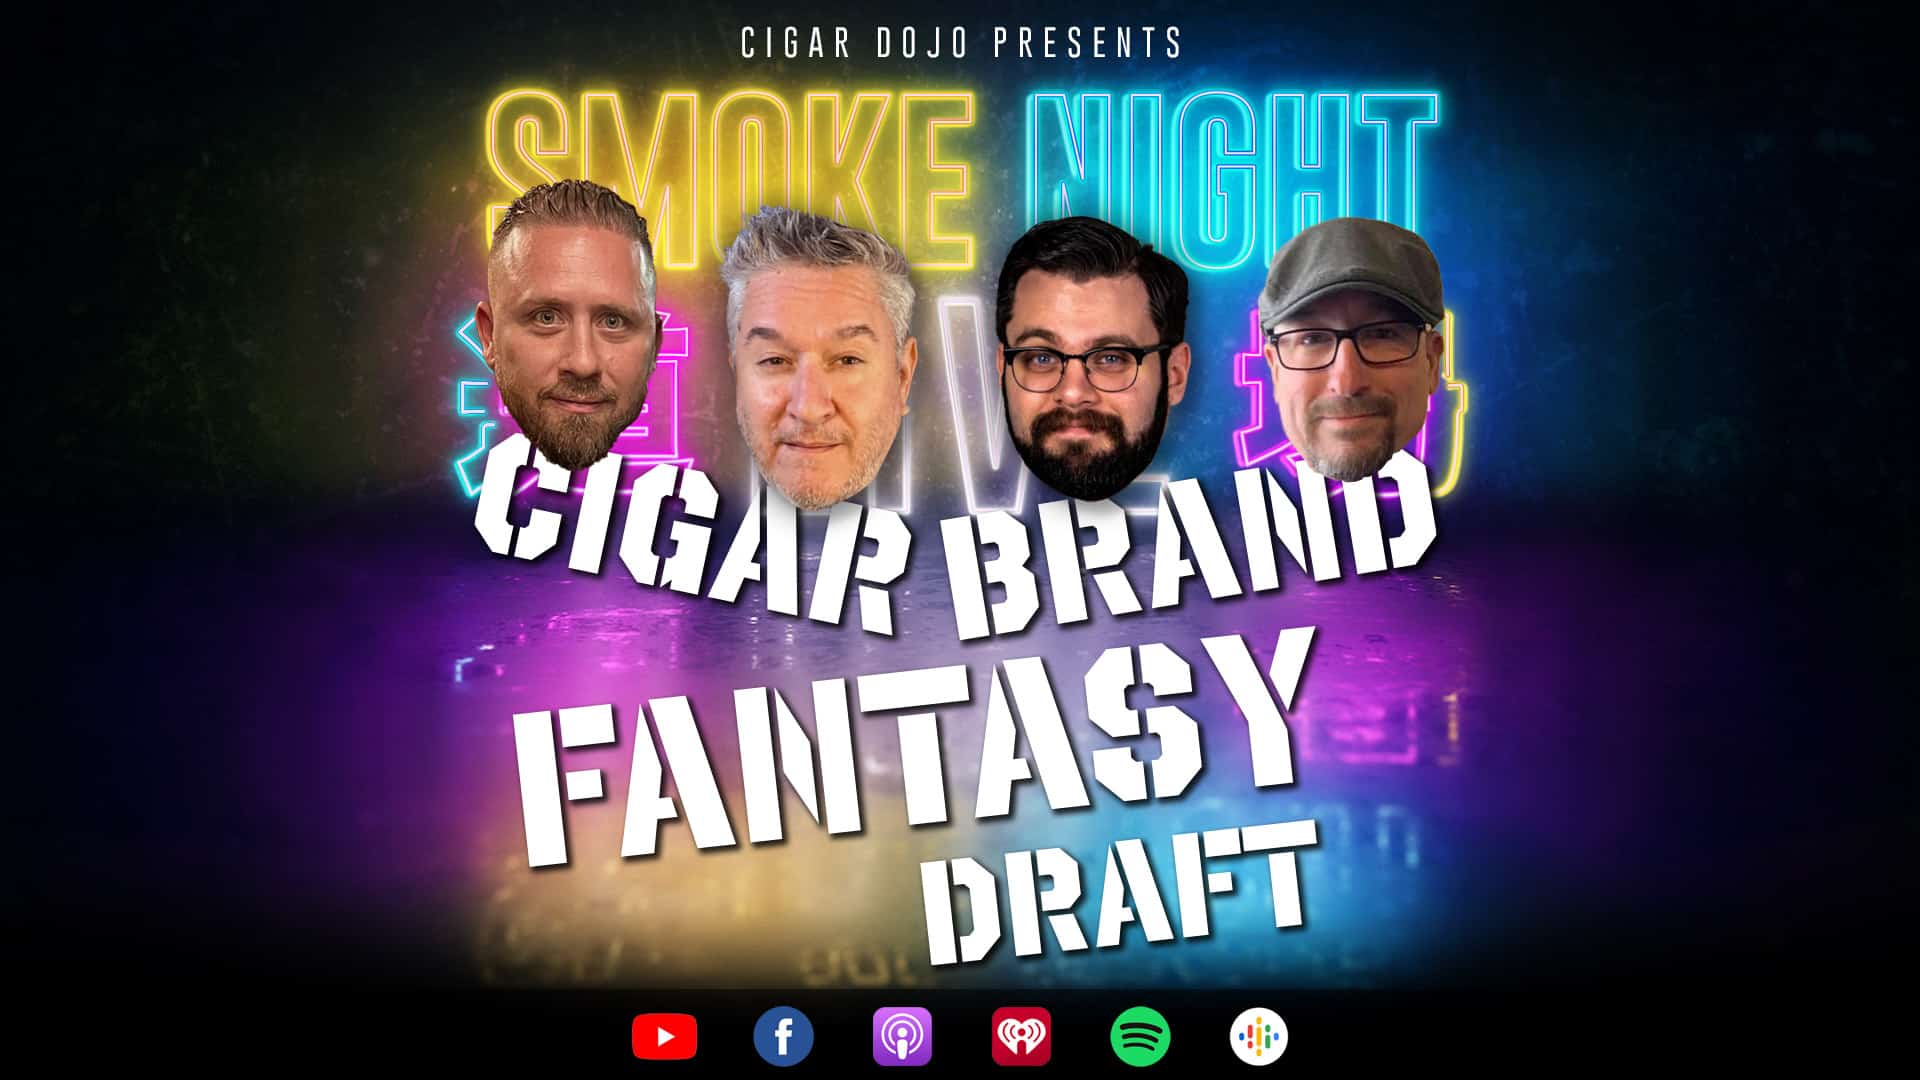 Cigar Brand Fantasy Draft